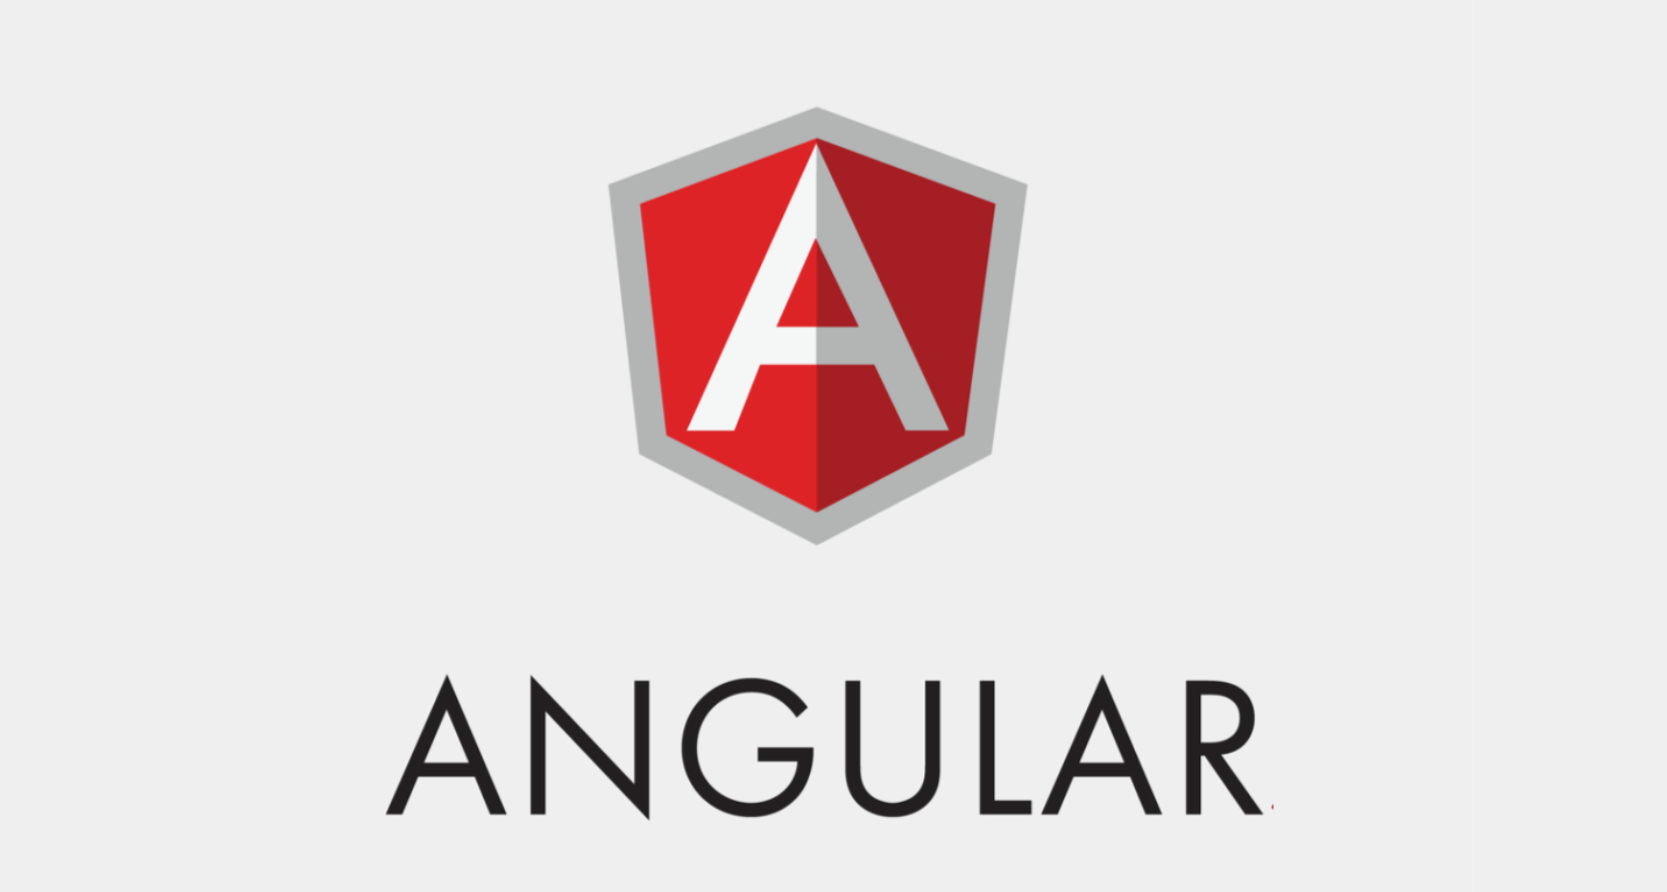 Đặc điểm nổi bật của lập trình Angular is Application